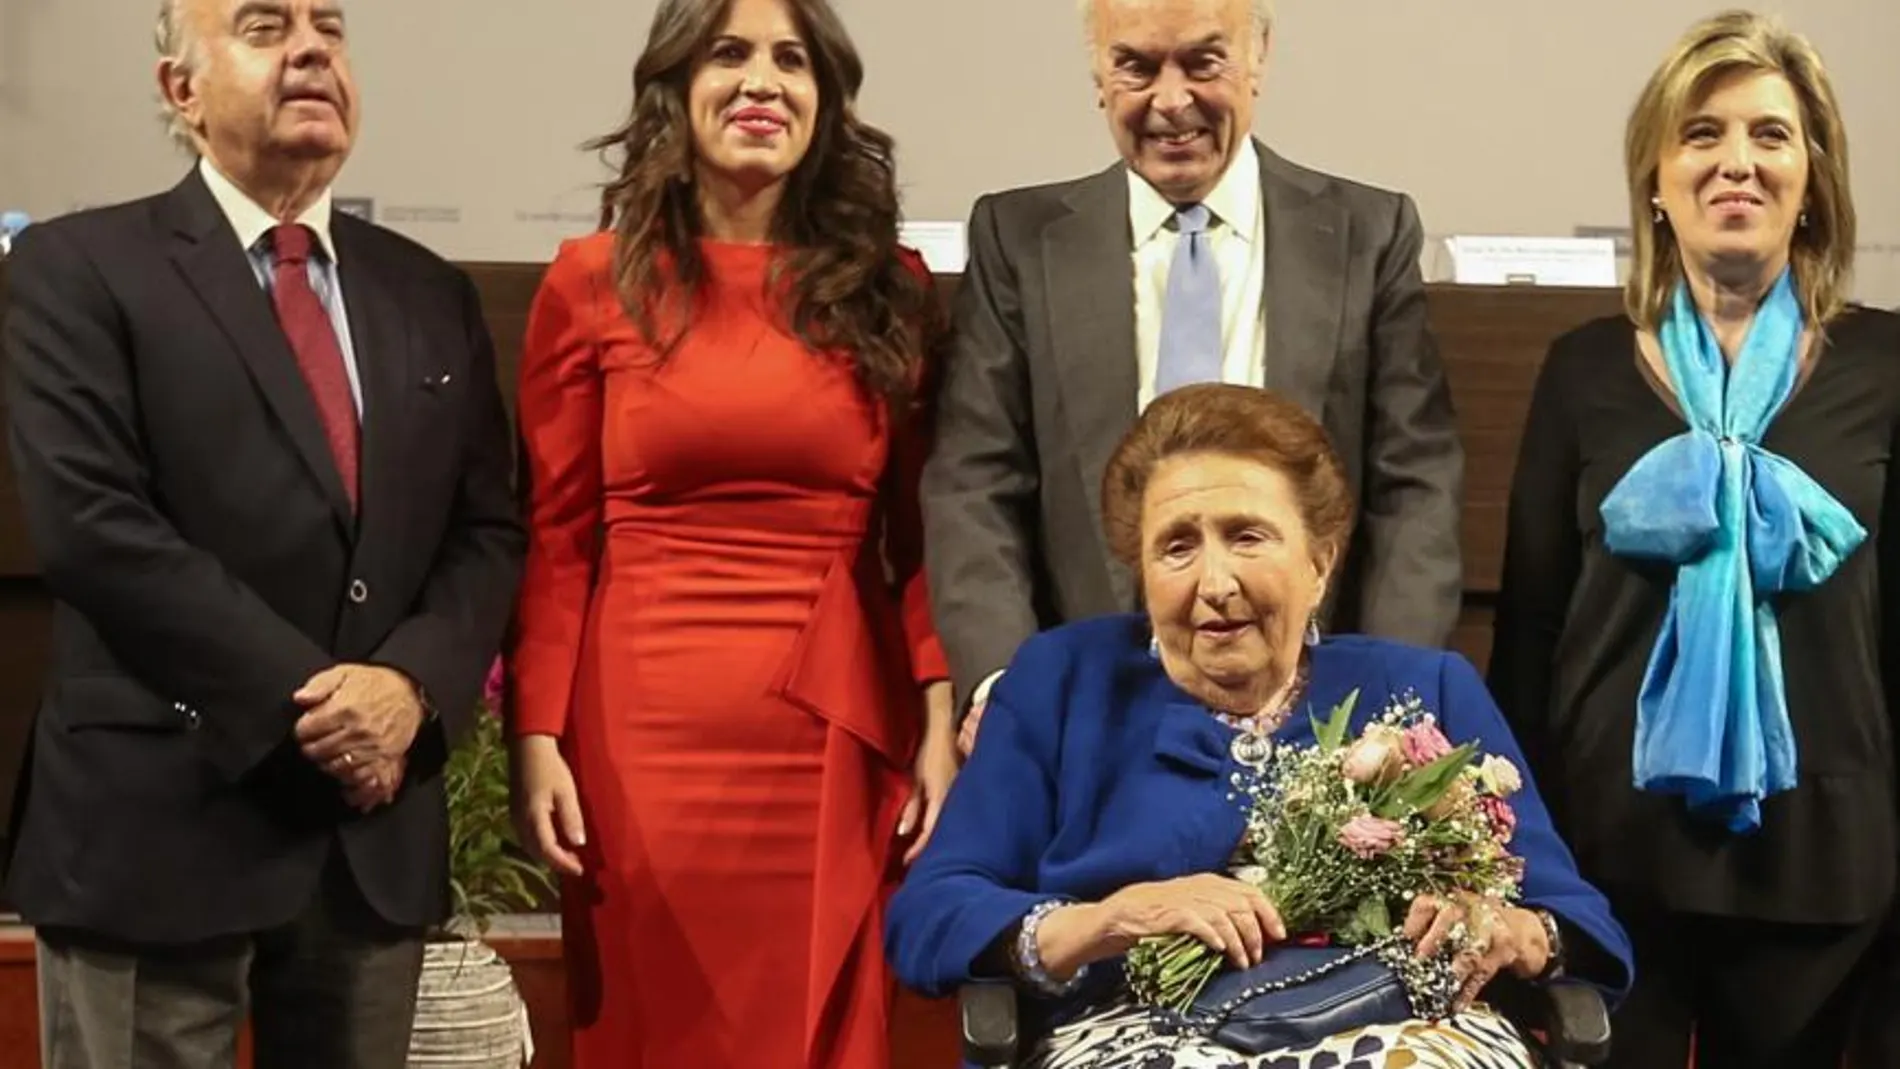 Los Duques de Soria junto a la delegada María José Salgueiro, la rectora Imelda Rodríguez y el profesor José Varela Ortega / Dos Santos